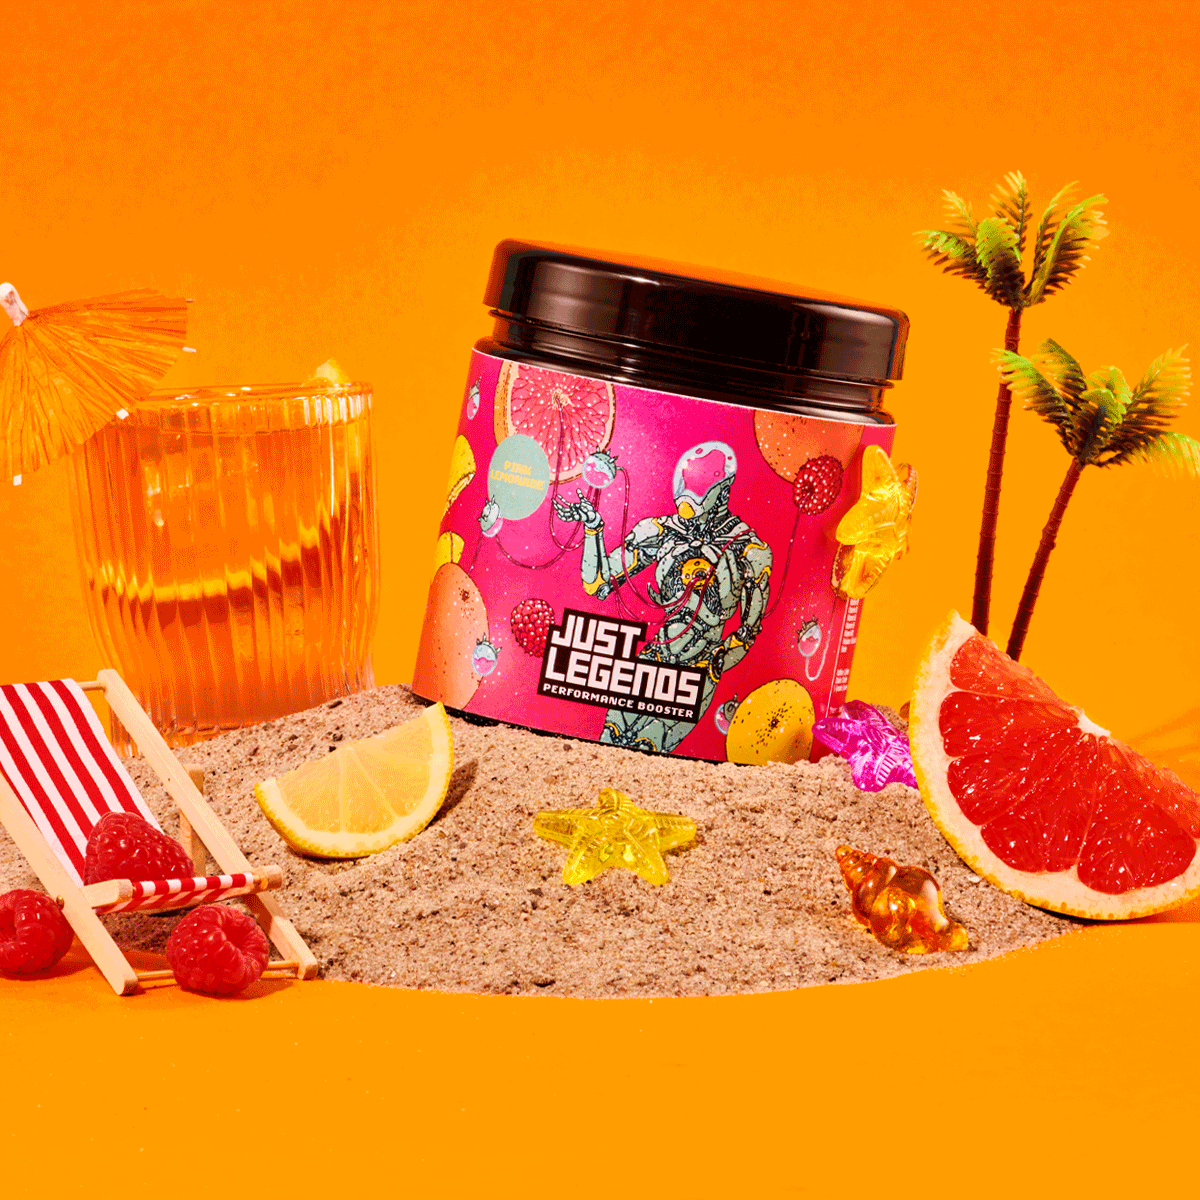 Just Legends Performance Booster Pink Lemonade | Funktionaler, veganer Performance Booster auf Pulverbasis ohne Zucker, mit wenig Kalorien, vielen Vitaminen und natürlichen Aromen.